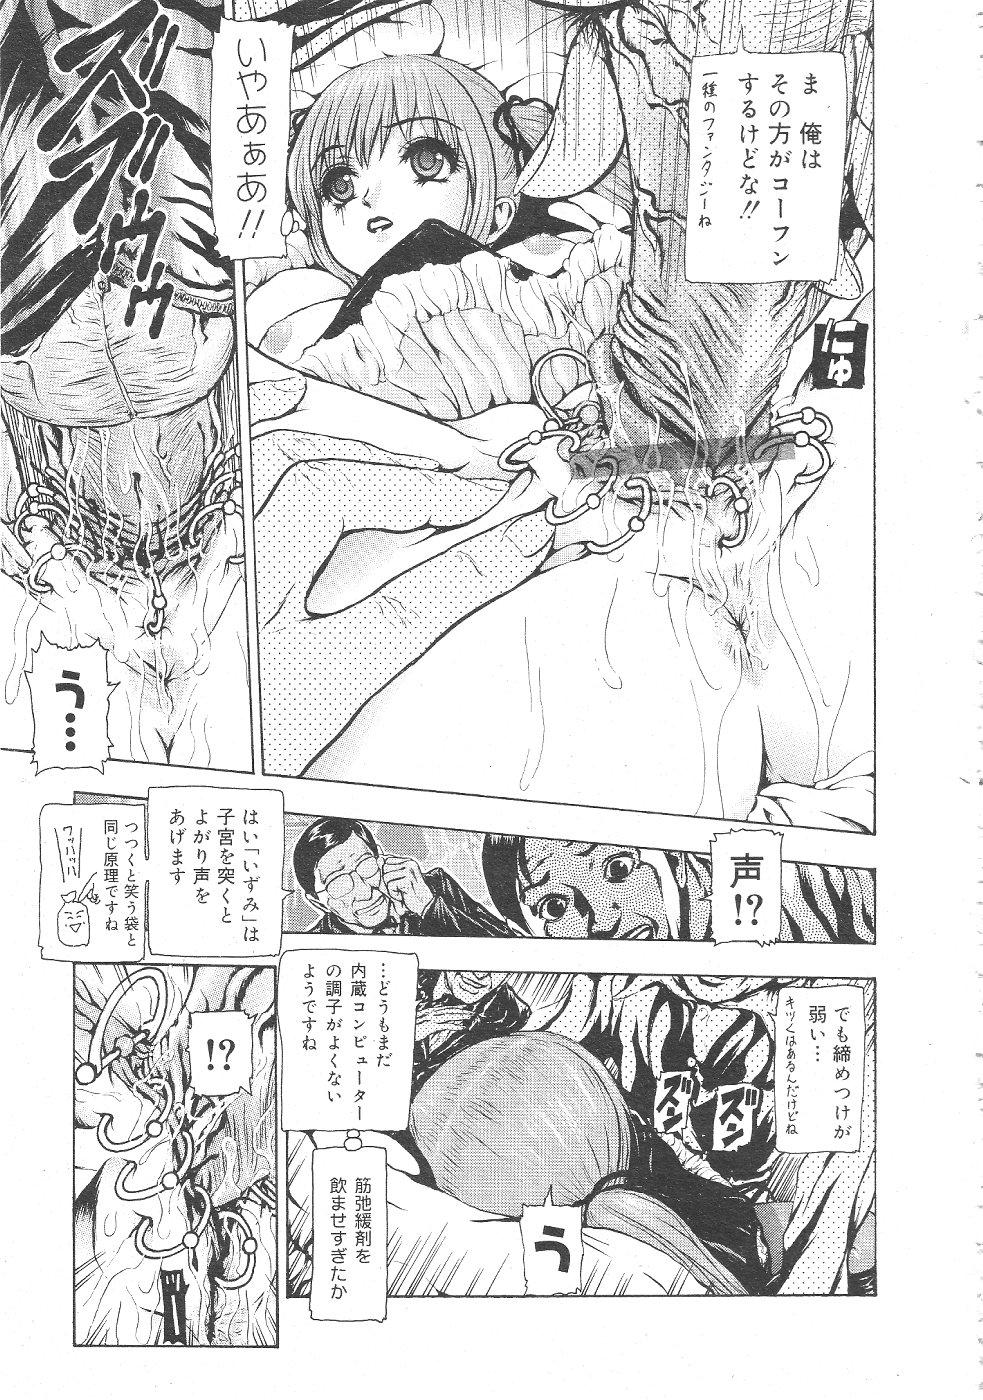 Gekkan Comic Muga 2004-06 Vol.10 158